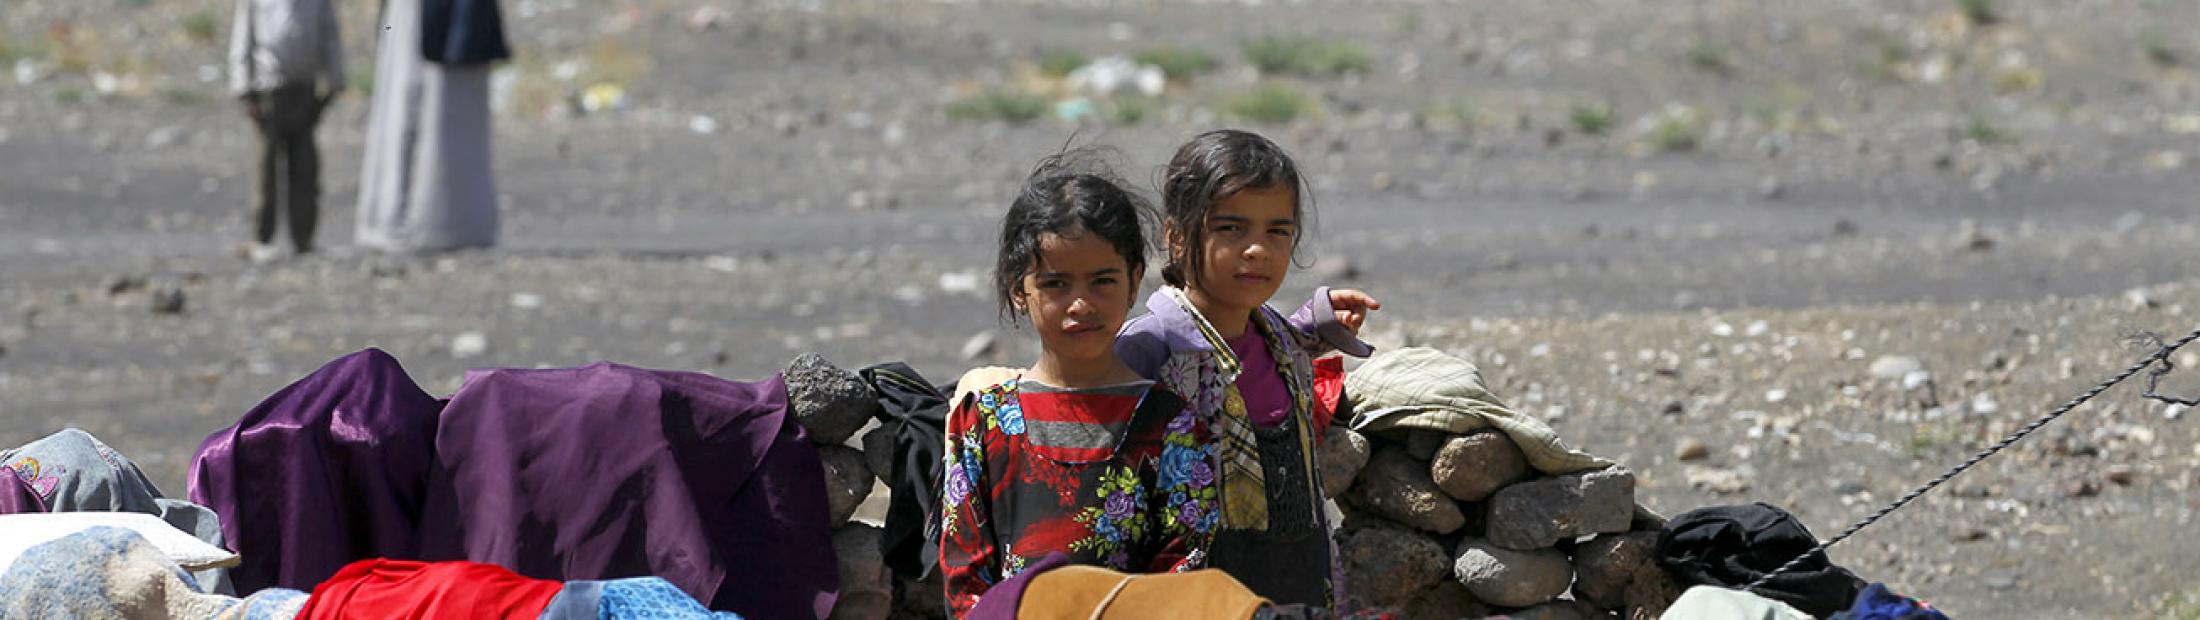 La vida después de 5 años de guerra en Yemen